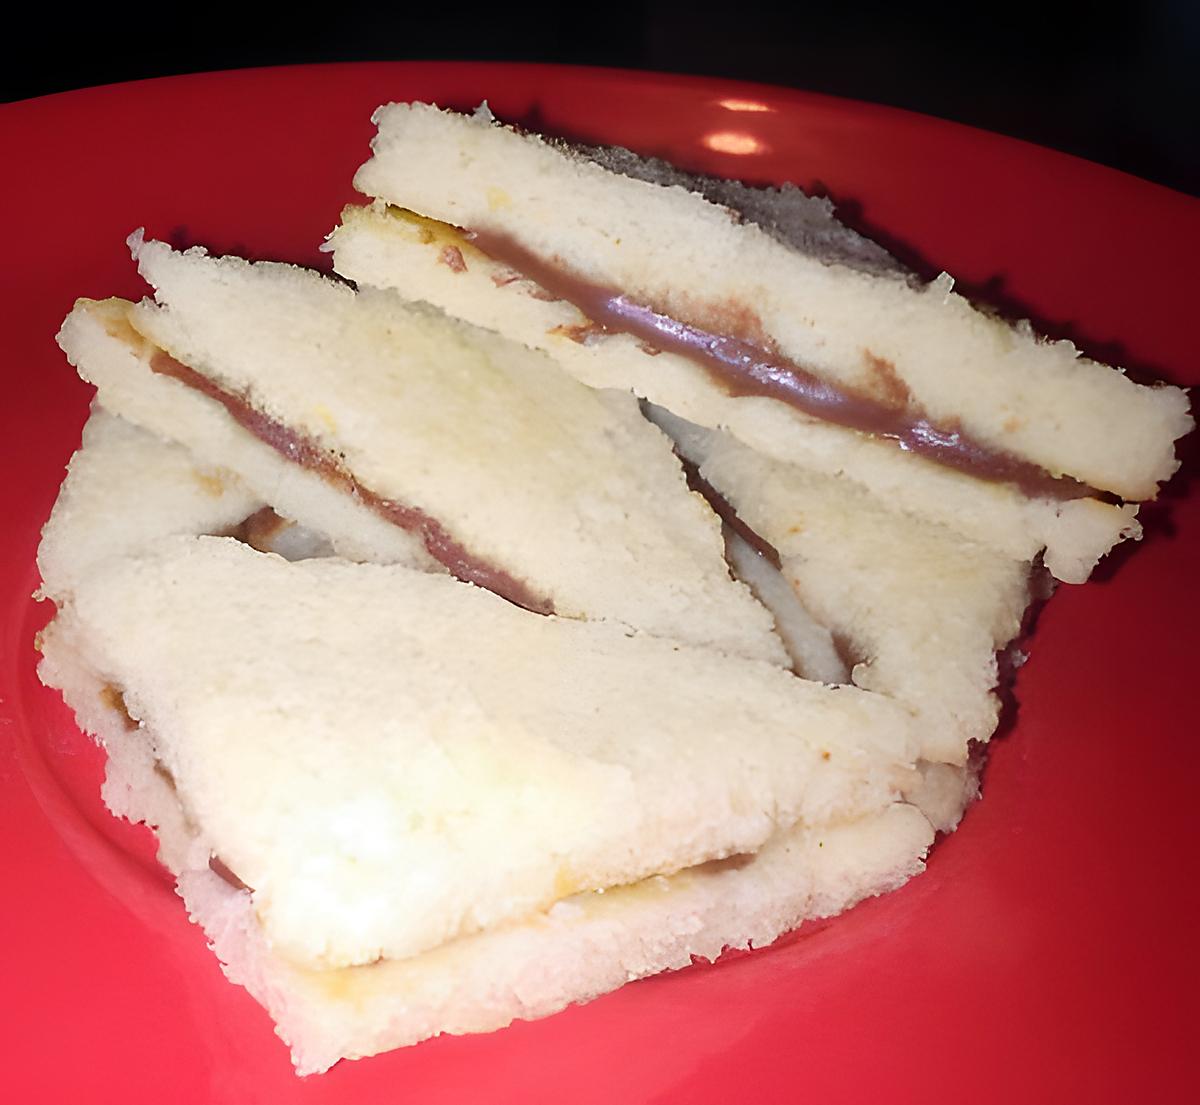 recette ~ Mini sandwiches financier chocolat blanc et ganache passion ~